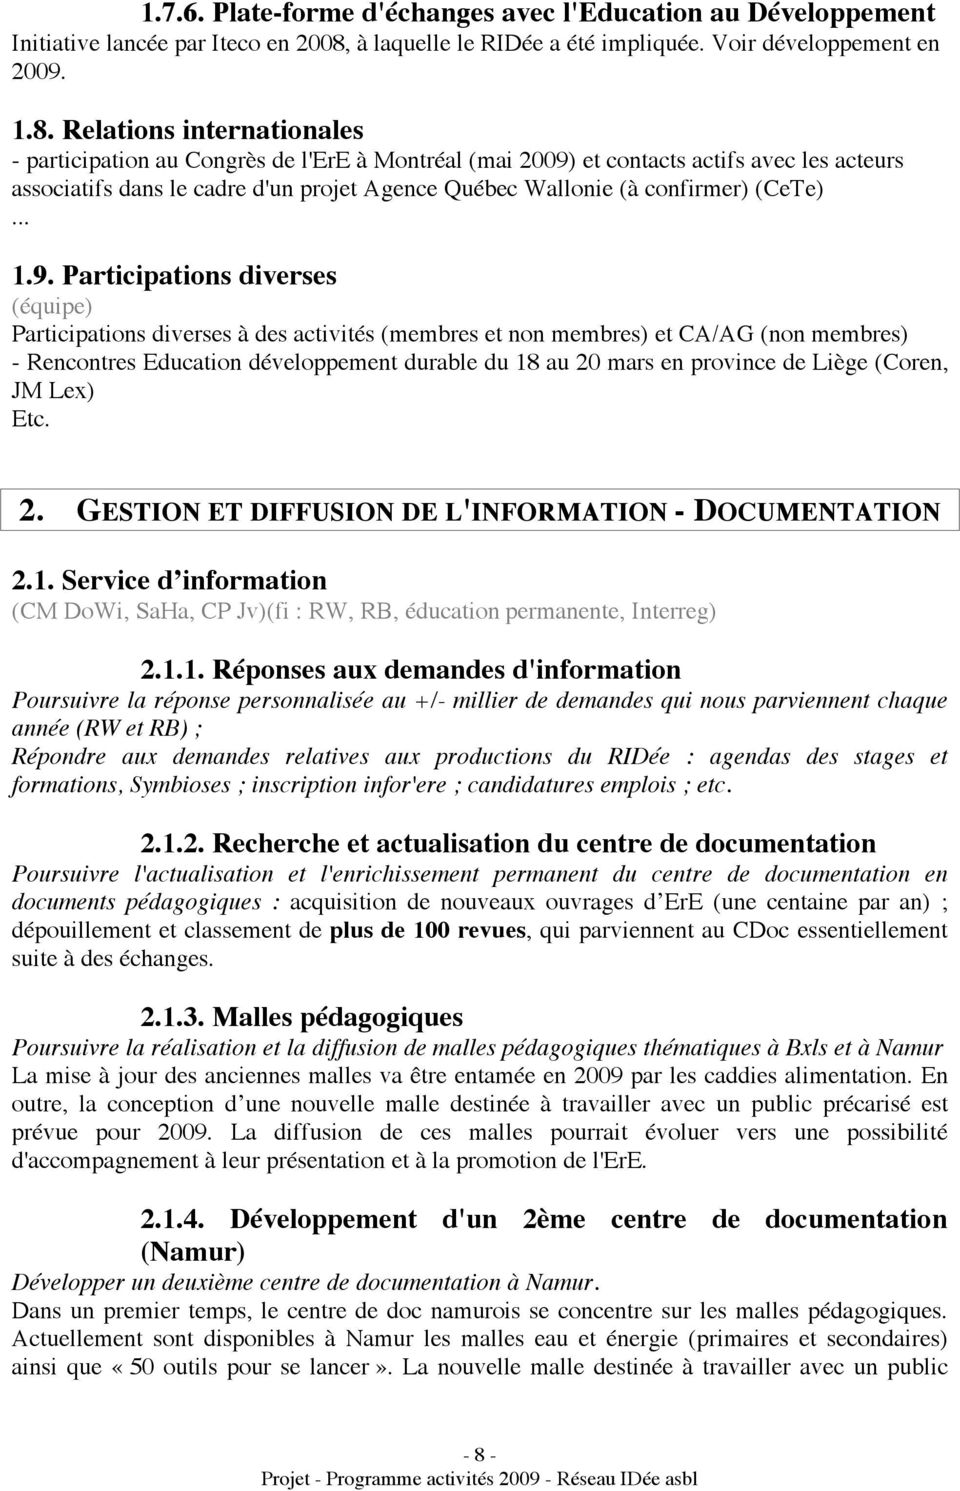 Relations internationales - participation au Congrès de l'ere à Montréal (mai 2009) et contacts actifs avec les acteurs associatifs dans le cadre d'un projet Agence Québec Wallonie (à confirmer)